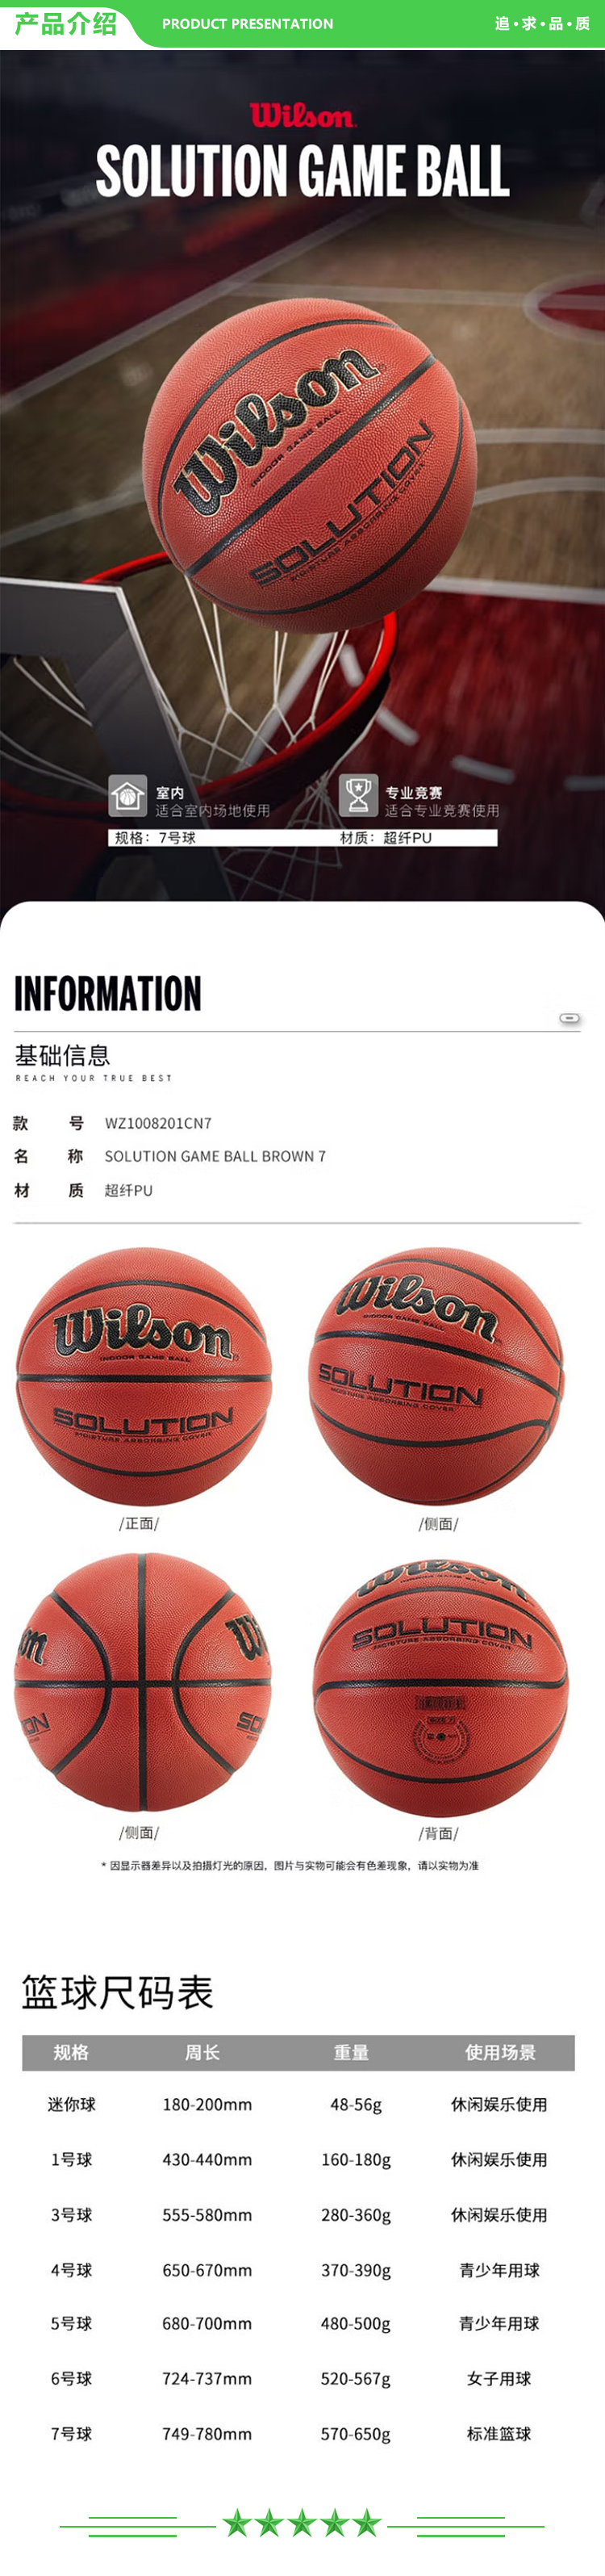 威尔胜 Wilson WZ1008201CN7 专业竞技比赛赛事篮球超纤7号室内PU蓝球Solution Game  2.jpg